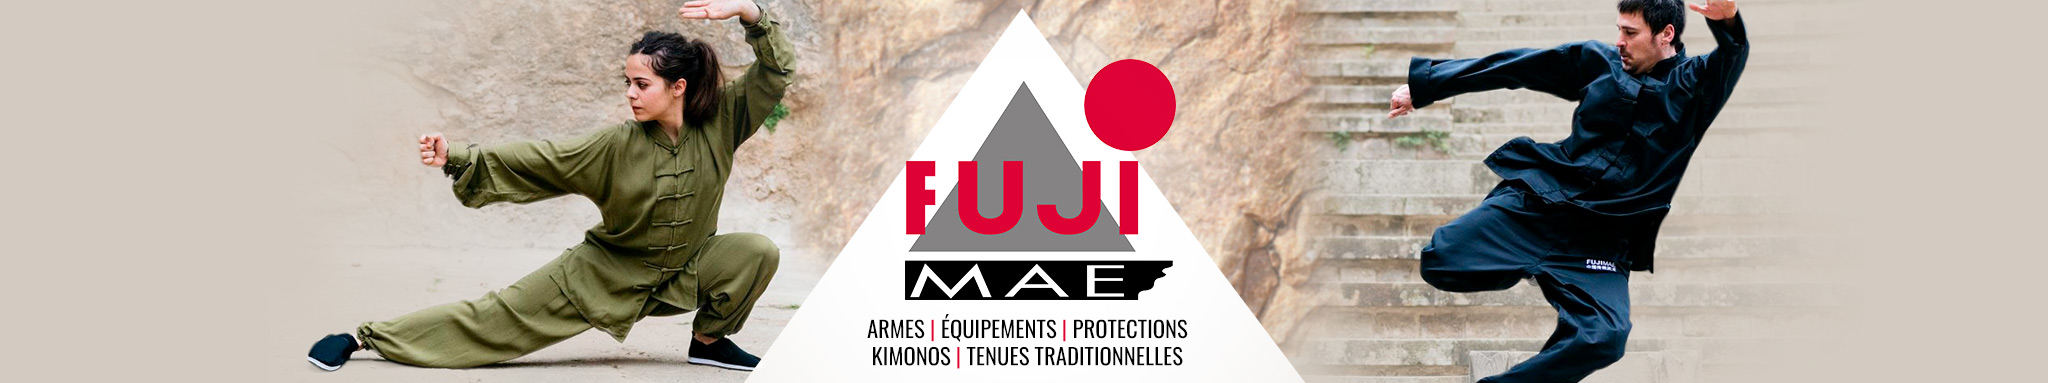 FUJI MAE : vêtements, équipements & accessoires de la marque FUJI MAE | Dragon Bleu